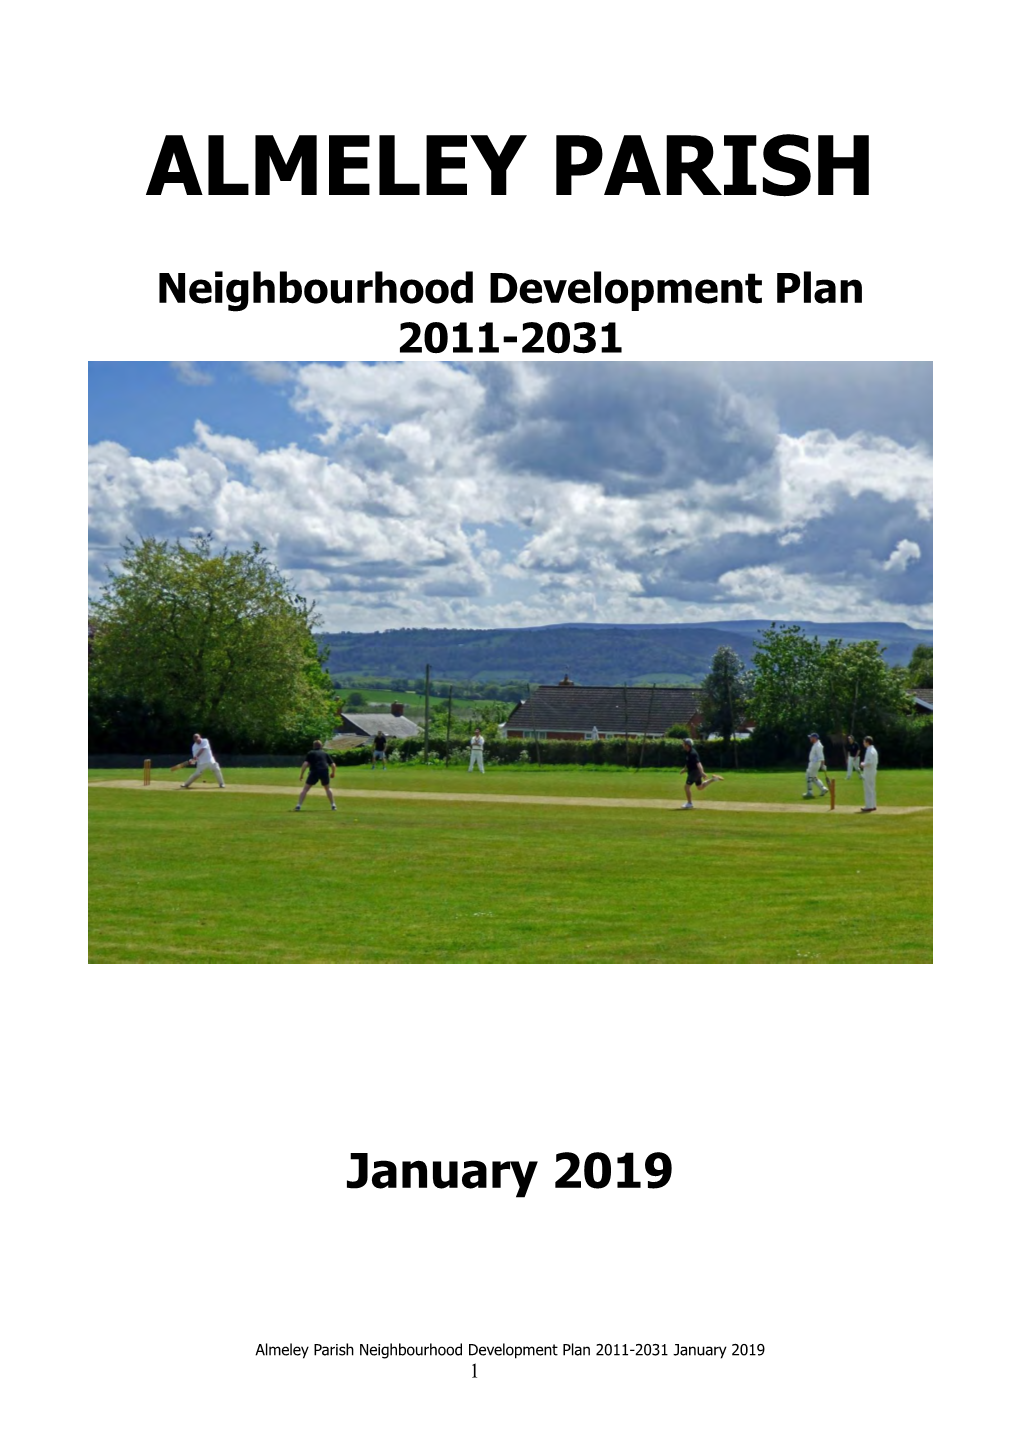 Almeley Neighbourhood Development Plan January 2019